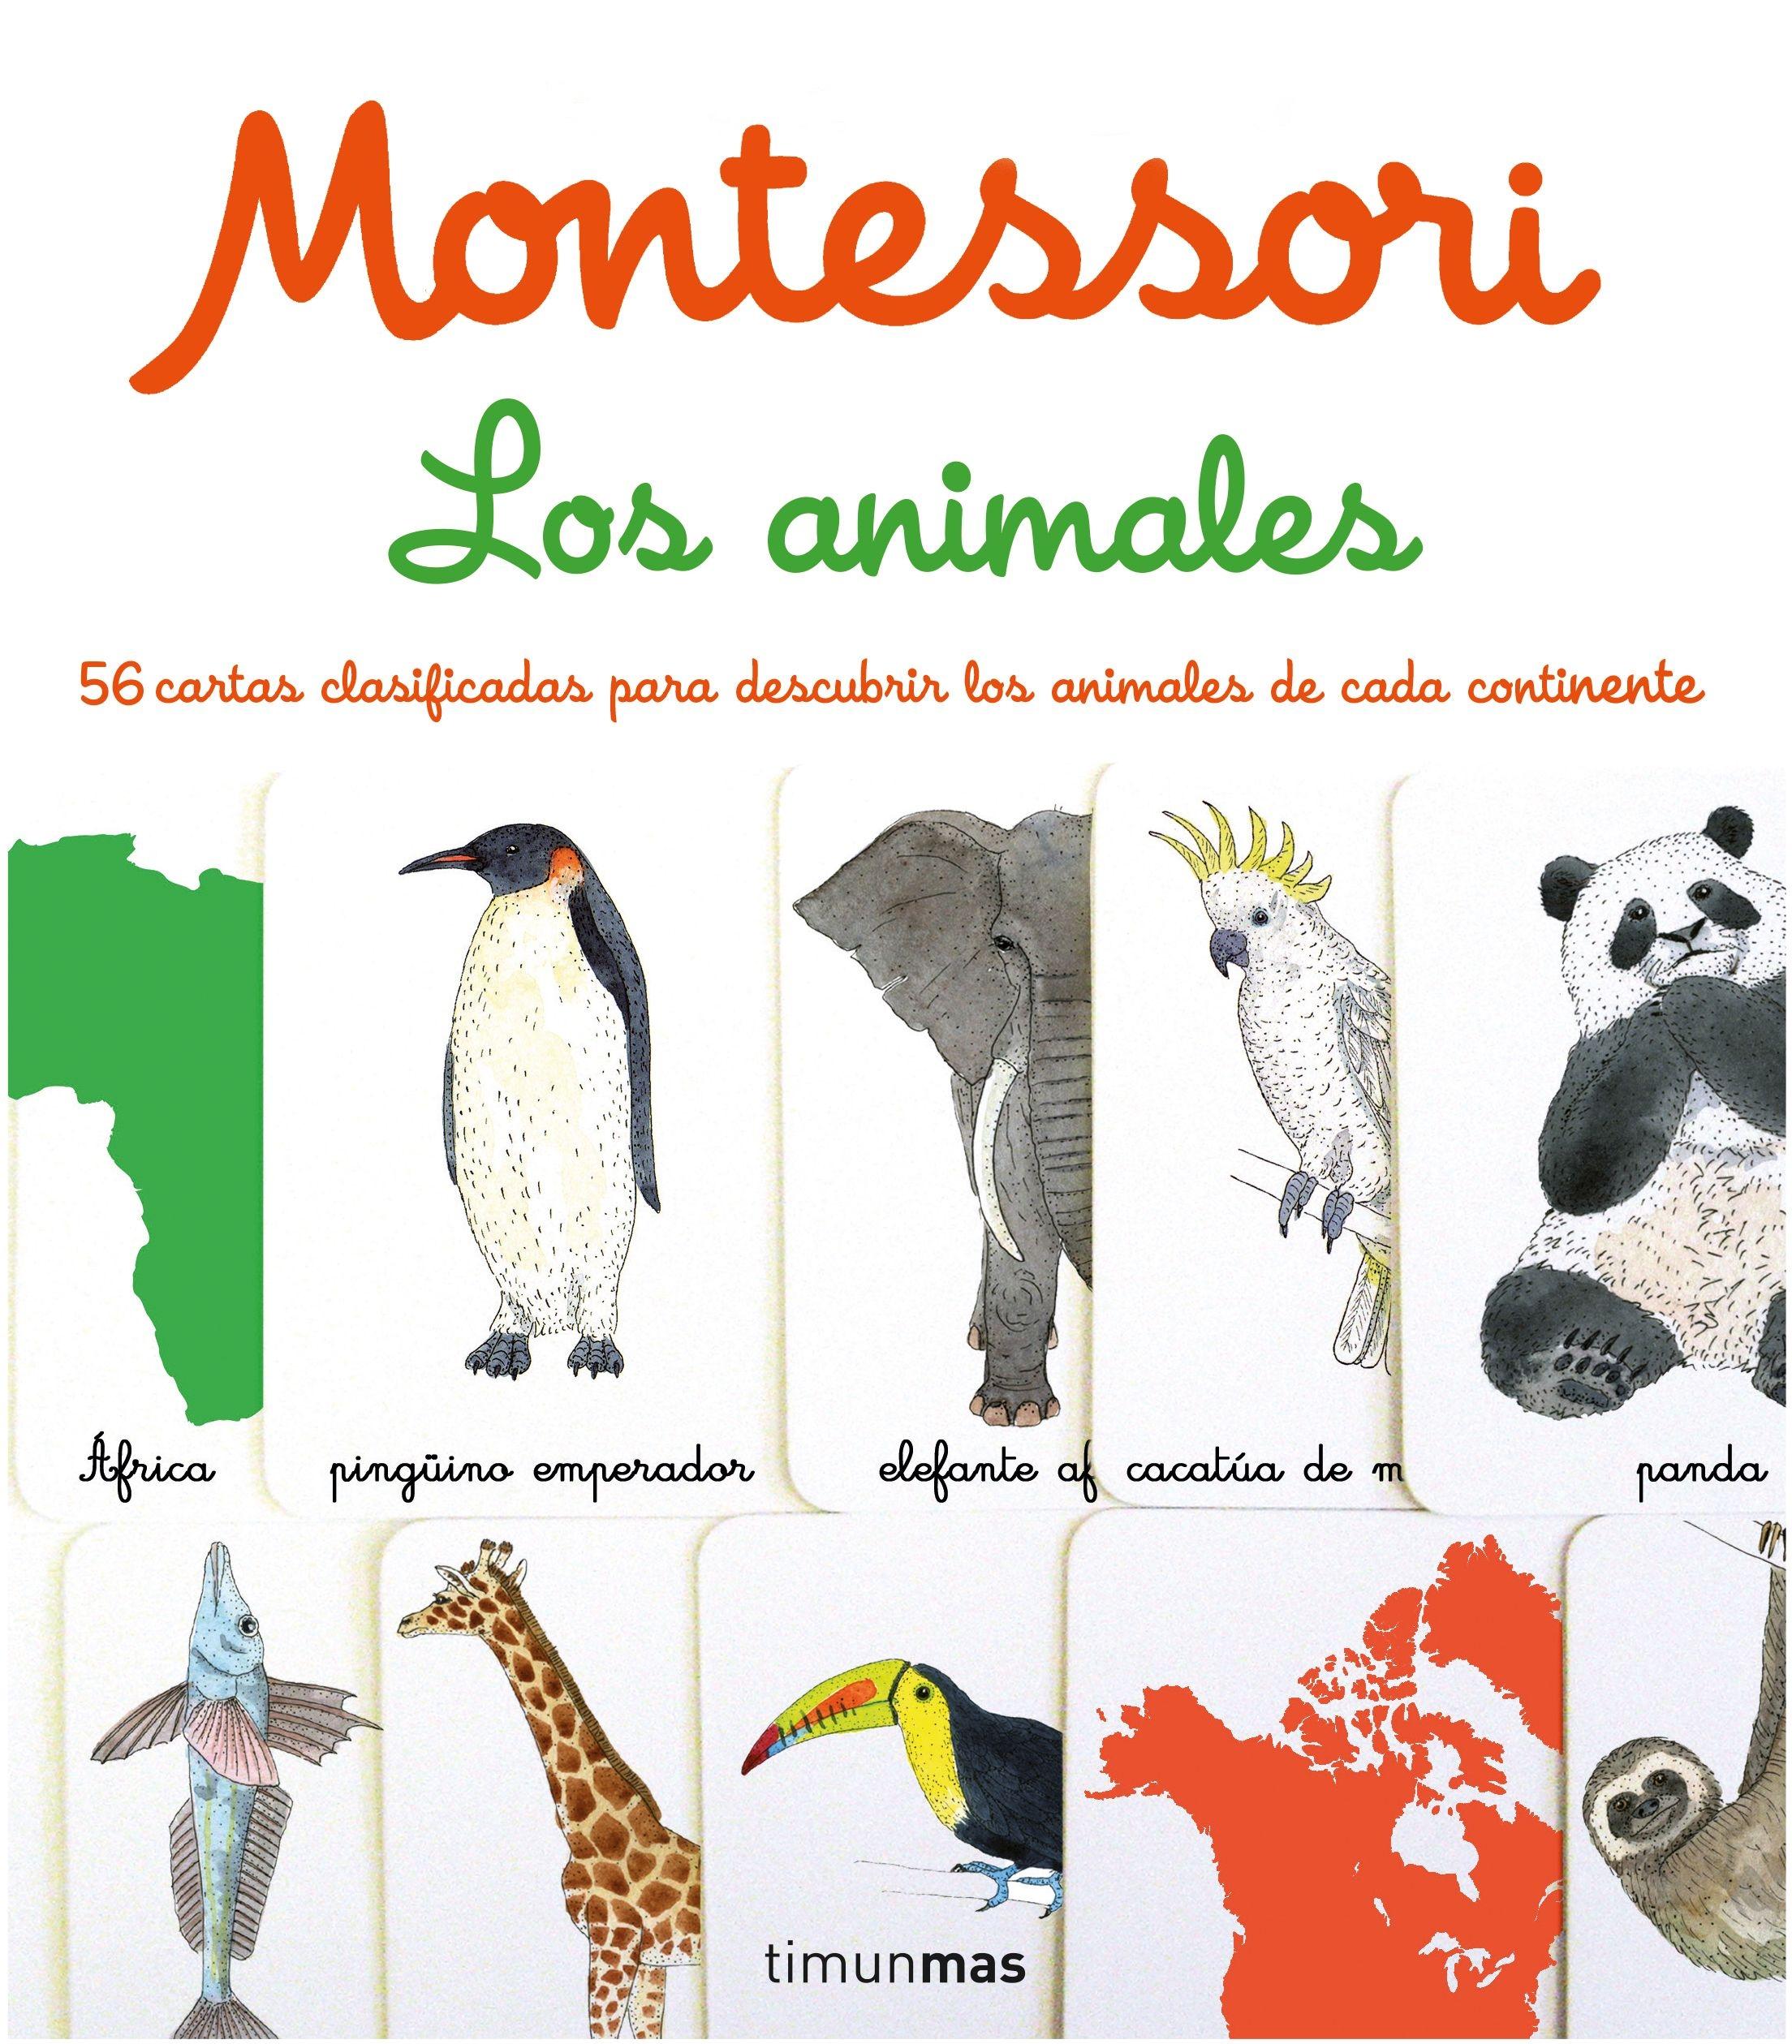 Montessori. los Animales "1 Libro y 56 Tarjetas"